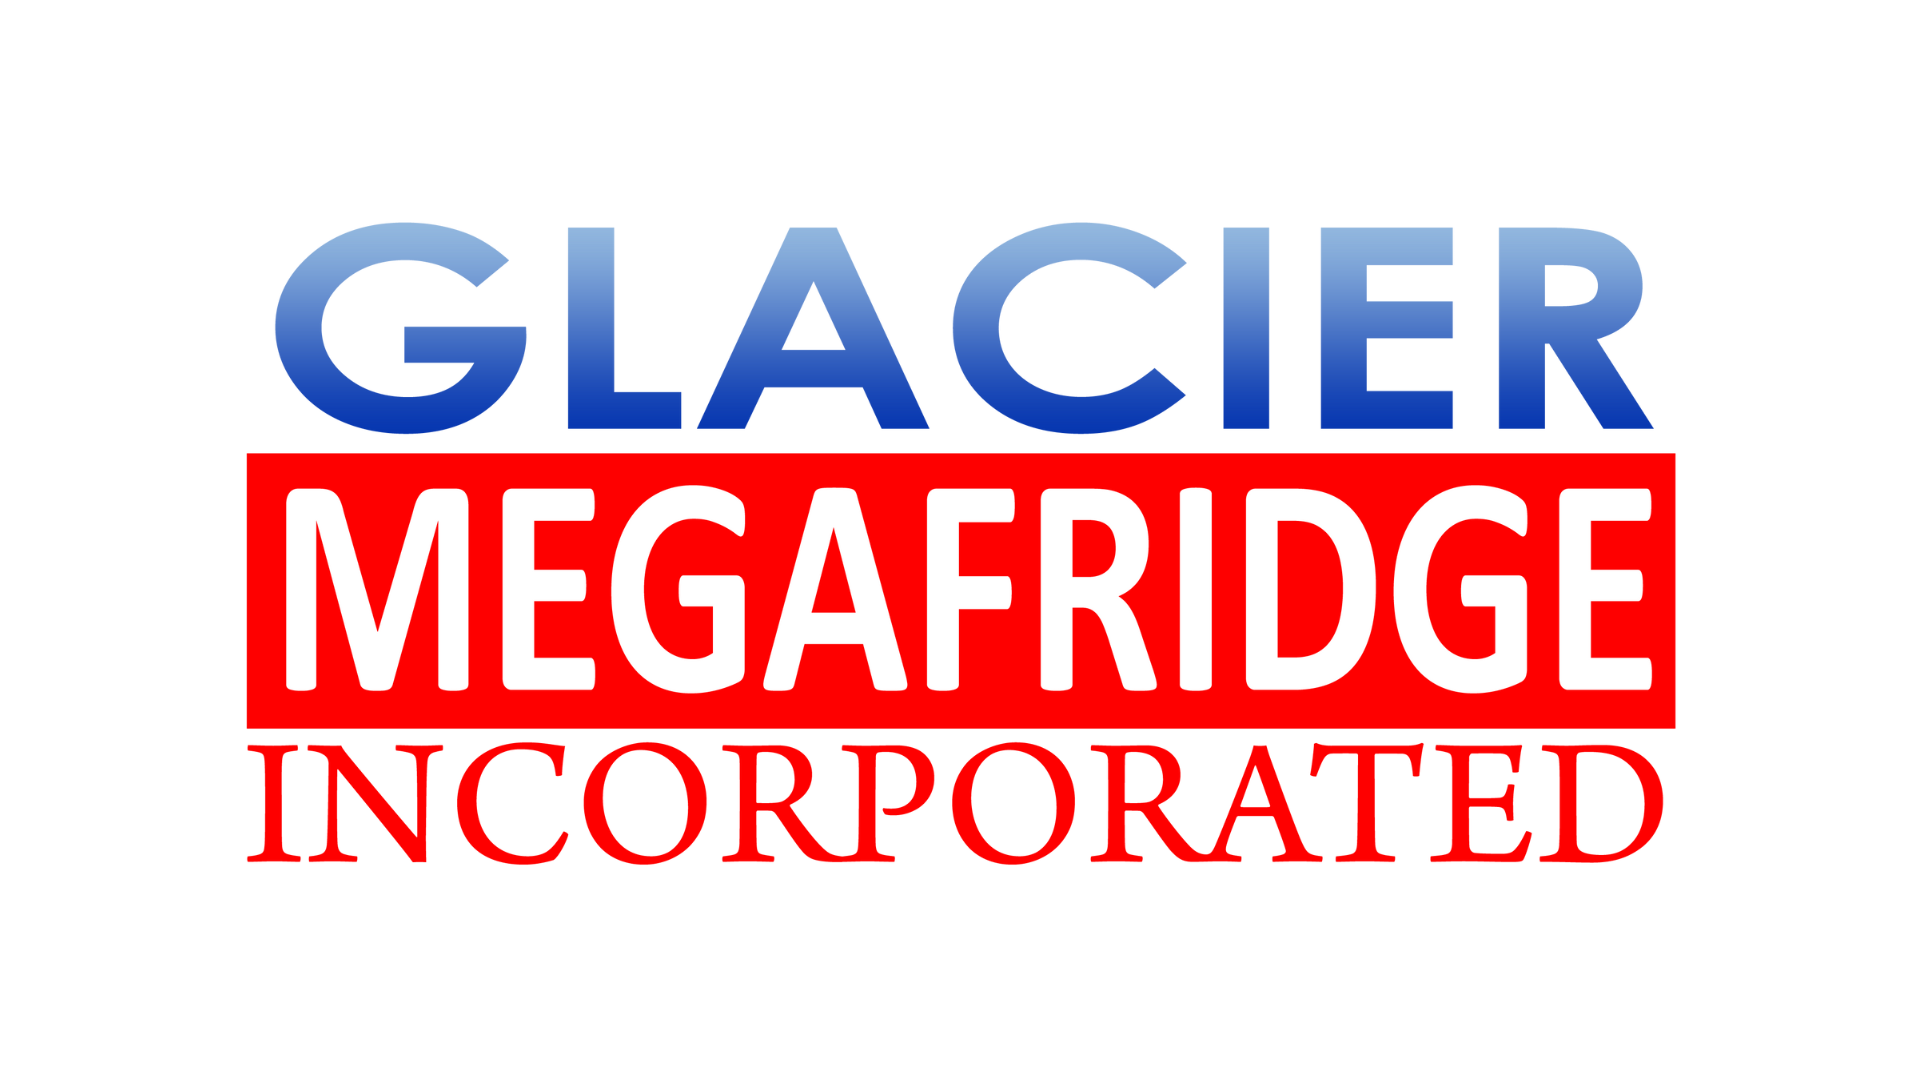 Glacier Megafridge